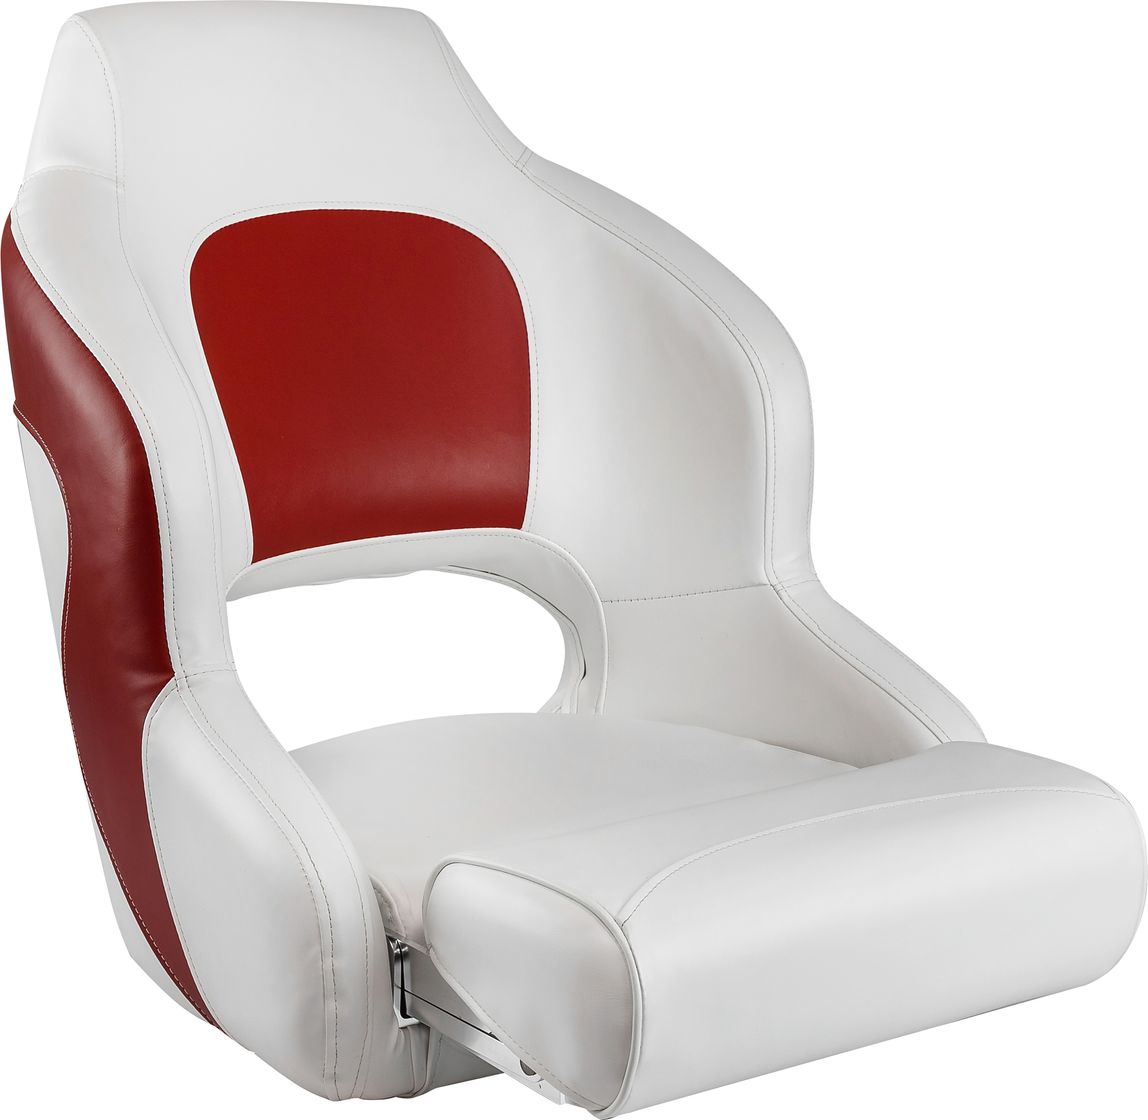 Кресло с болстером Premium Captain's Bucket, обивка винил, цвет белый/красный, Marine Rocket 75177WR-MR кресло для геймеров dxracer peak красный чёрный